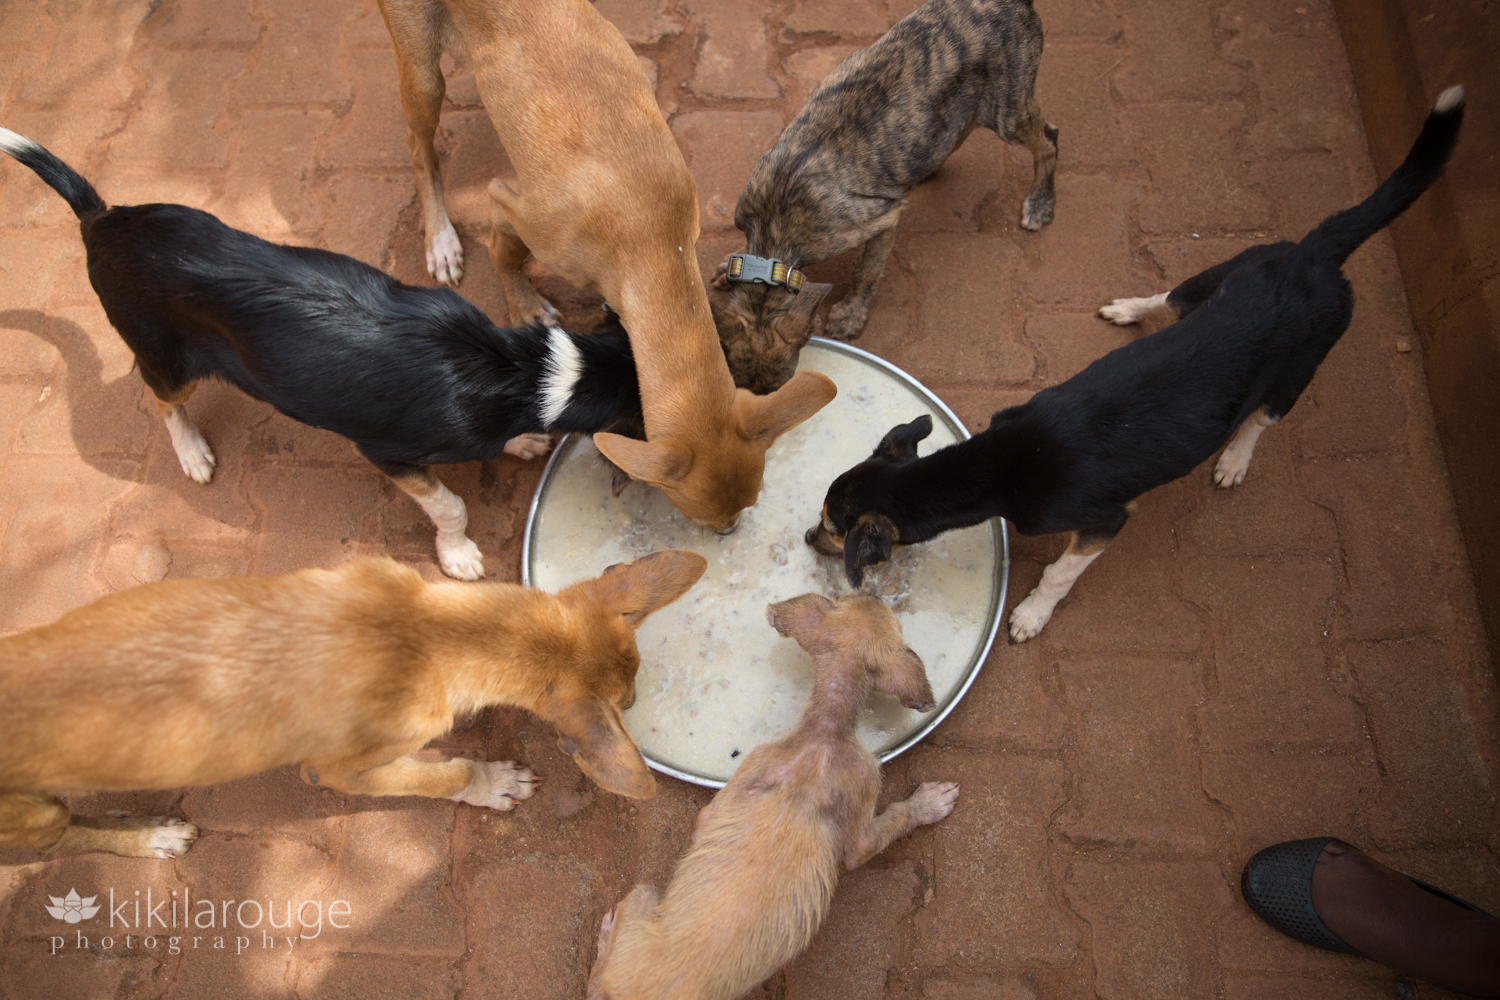 Puppies eating at Uganda Animal Shelter